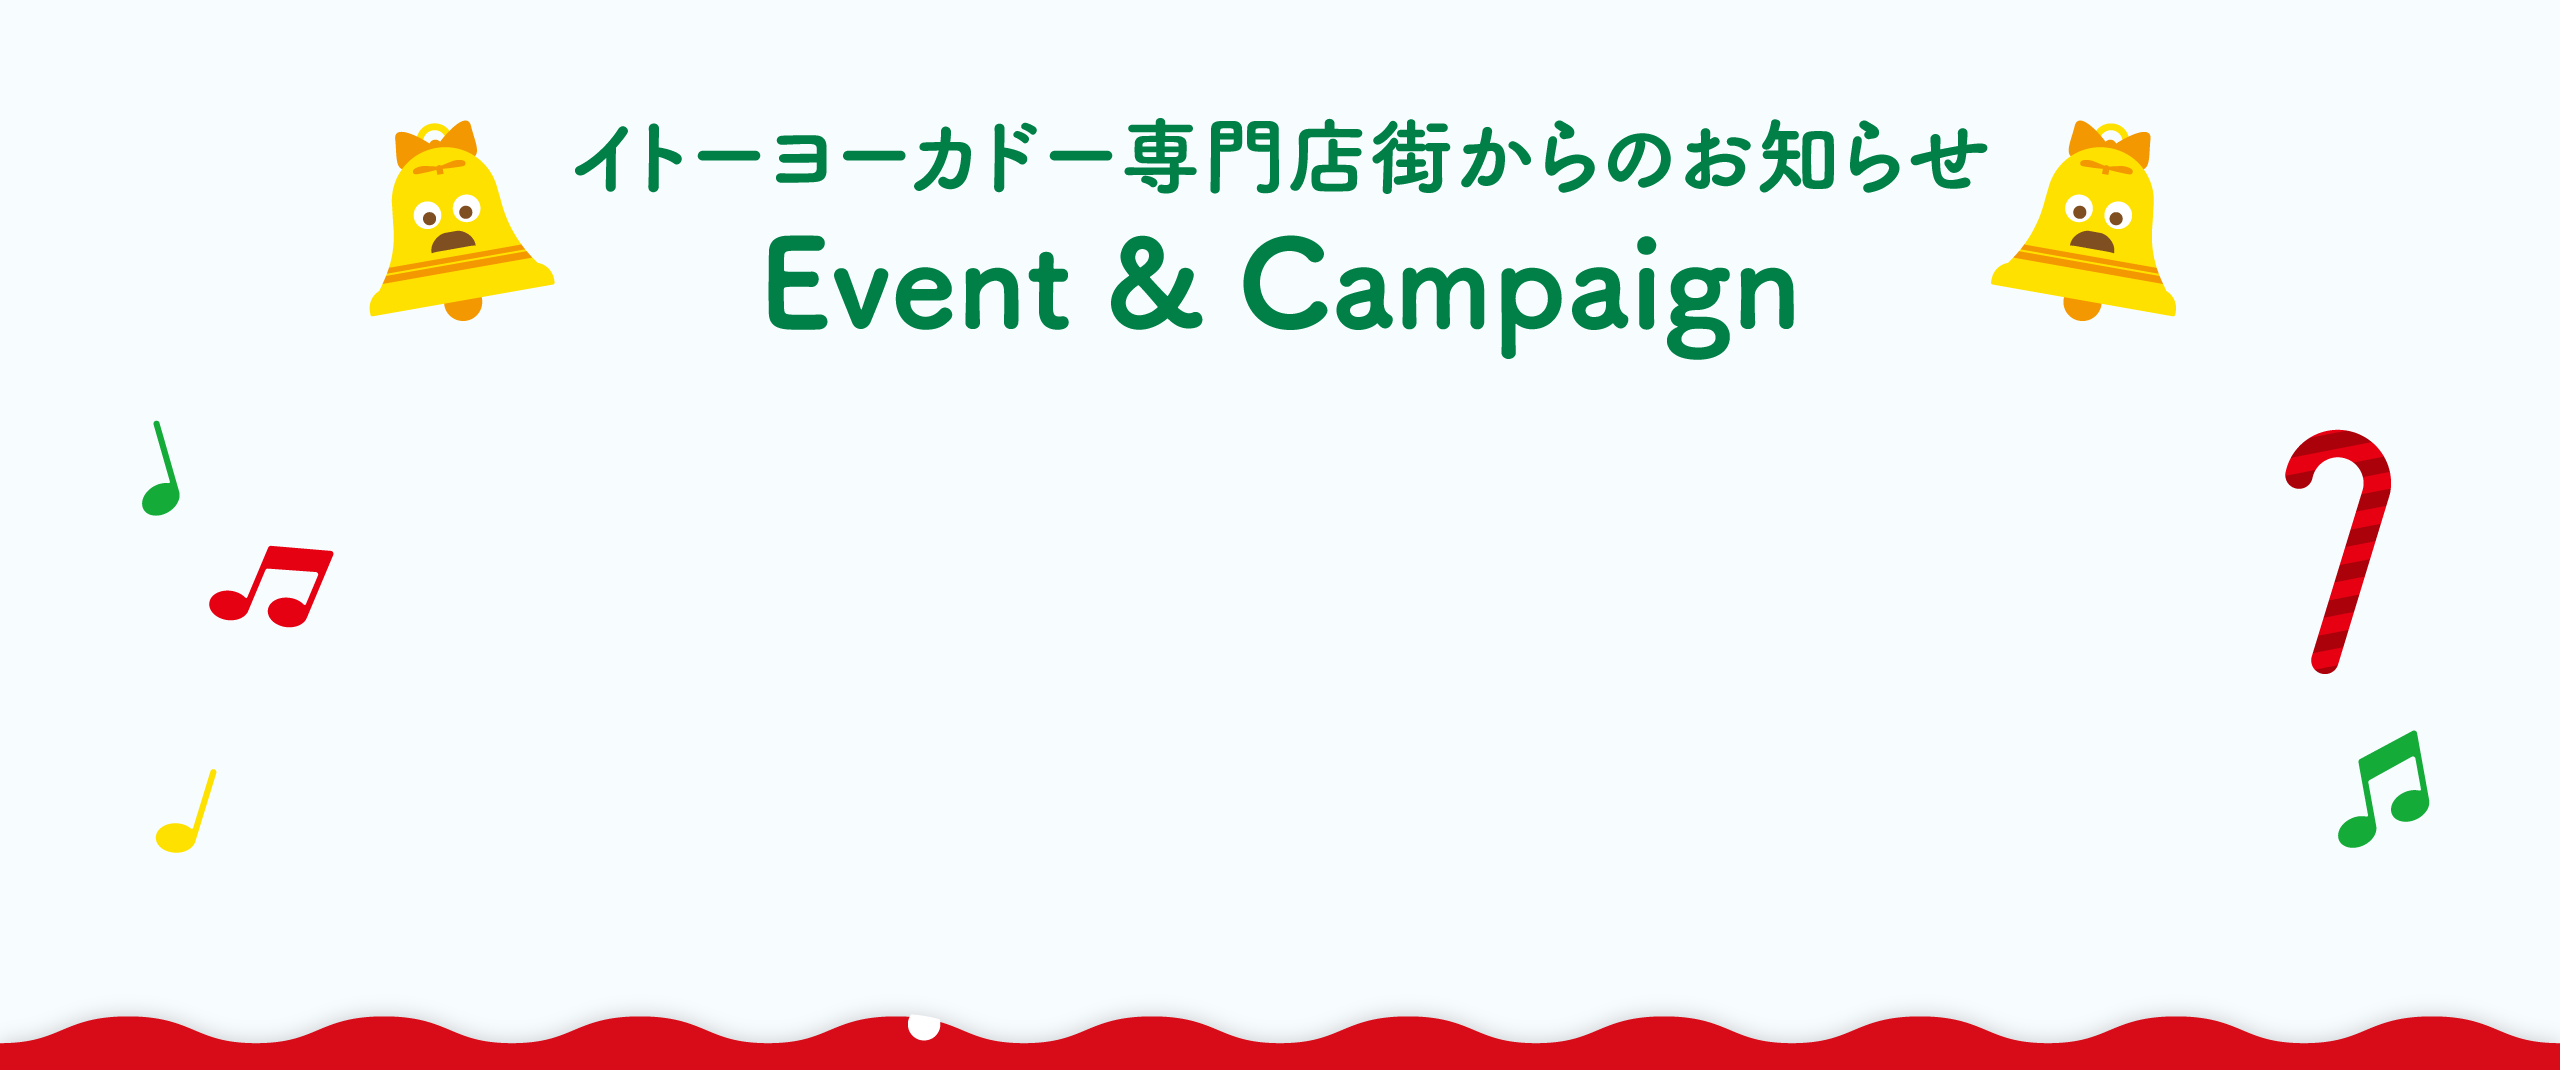 イトーヨーカドー専門店街からのお知らせ Event & Campaign